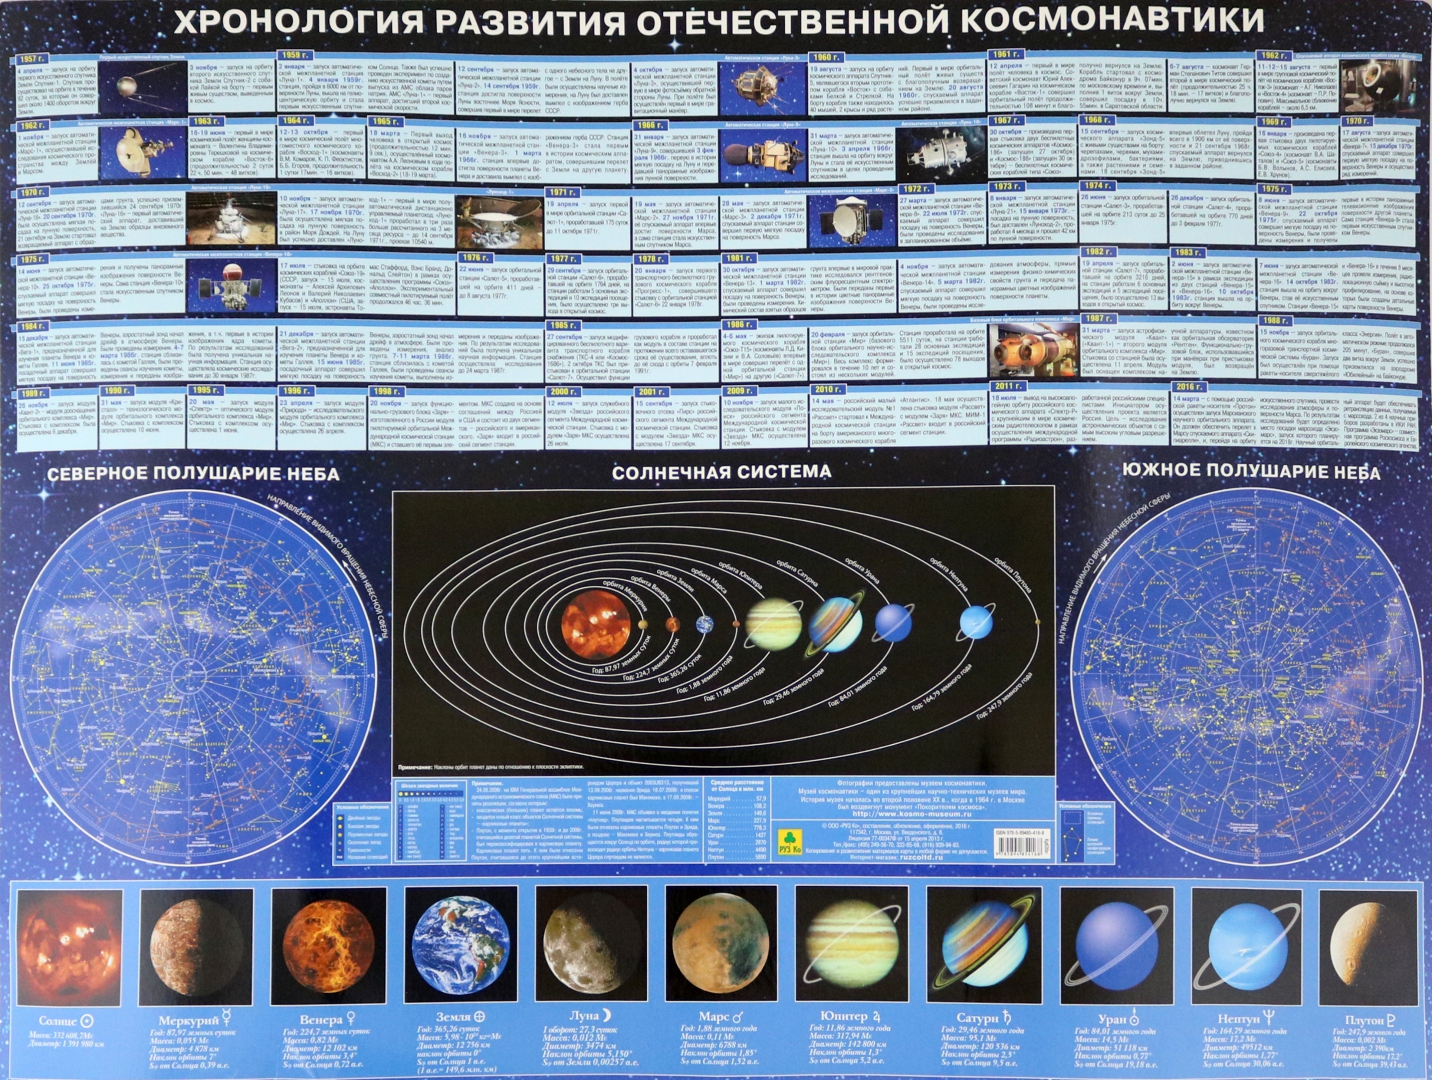 Иллюстрация 1 из 6 для Хронология развития отечественной космонавтики | Лабиринт - книги. Источник: Лабиринт